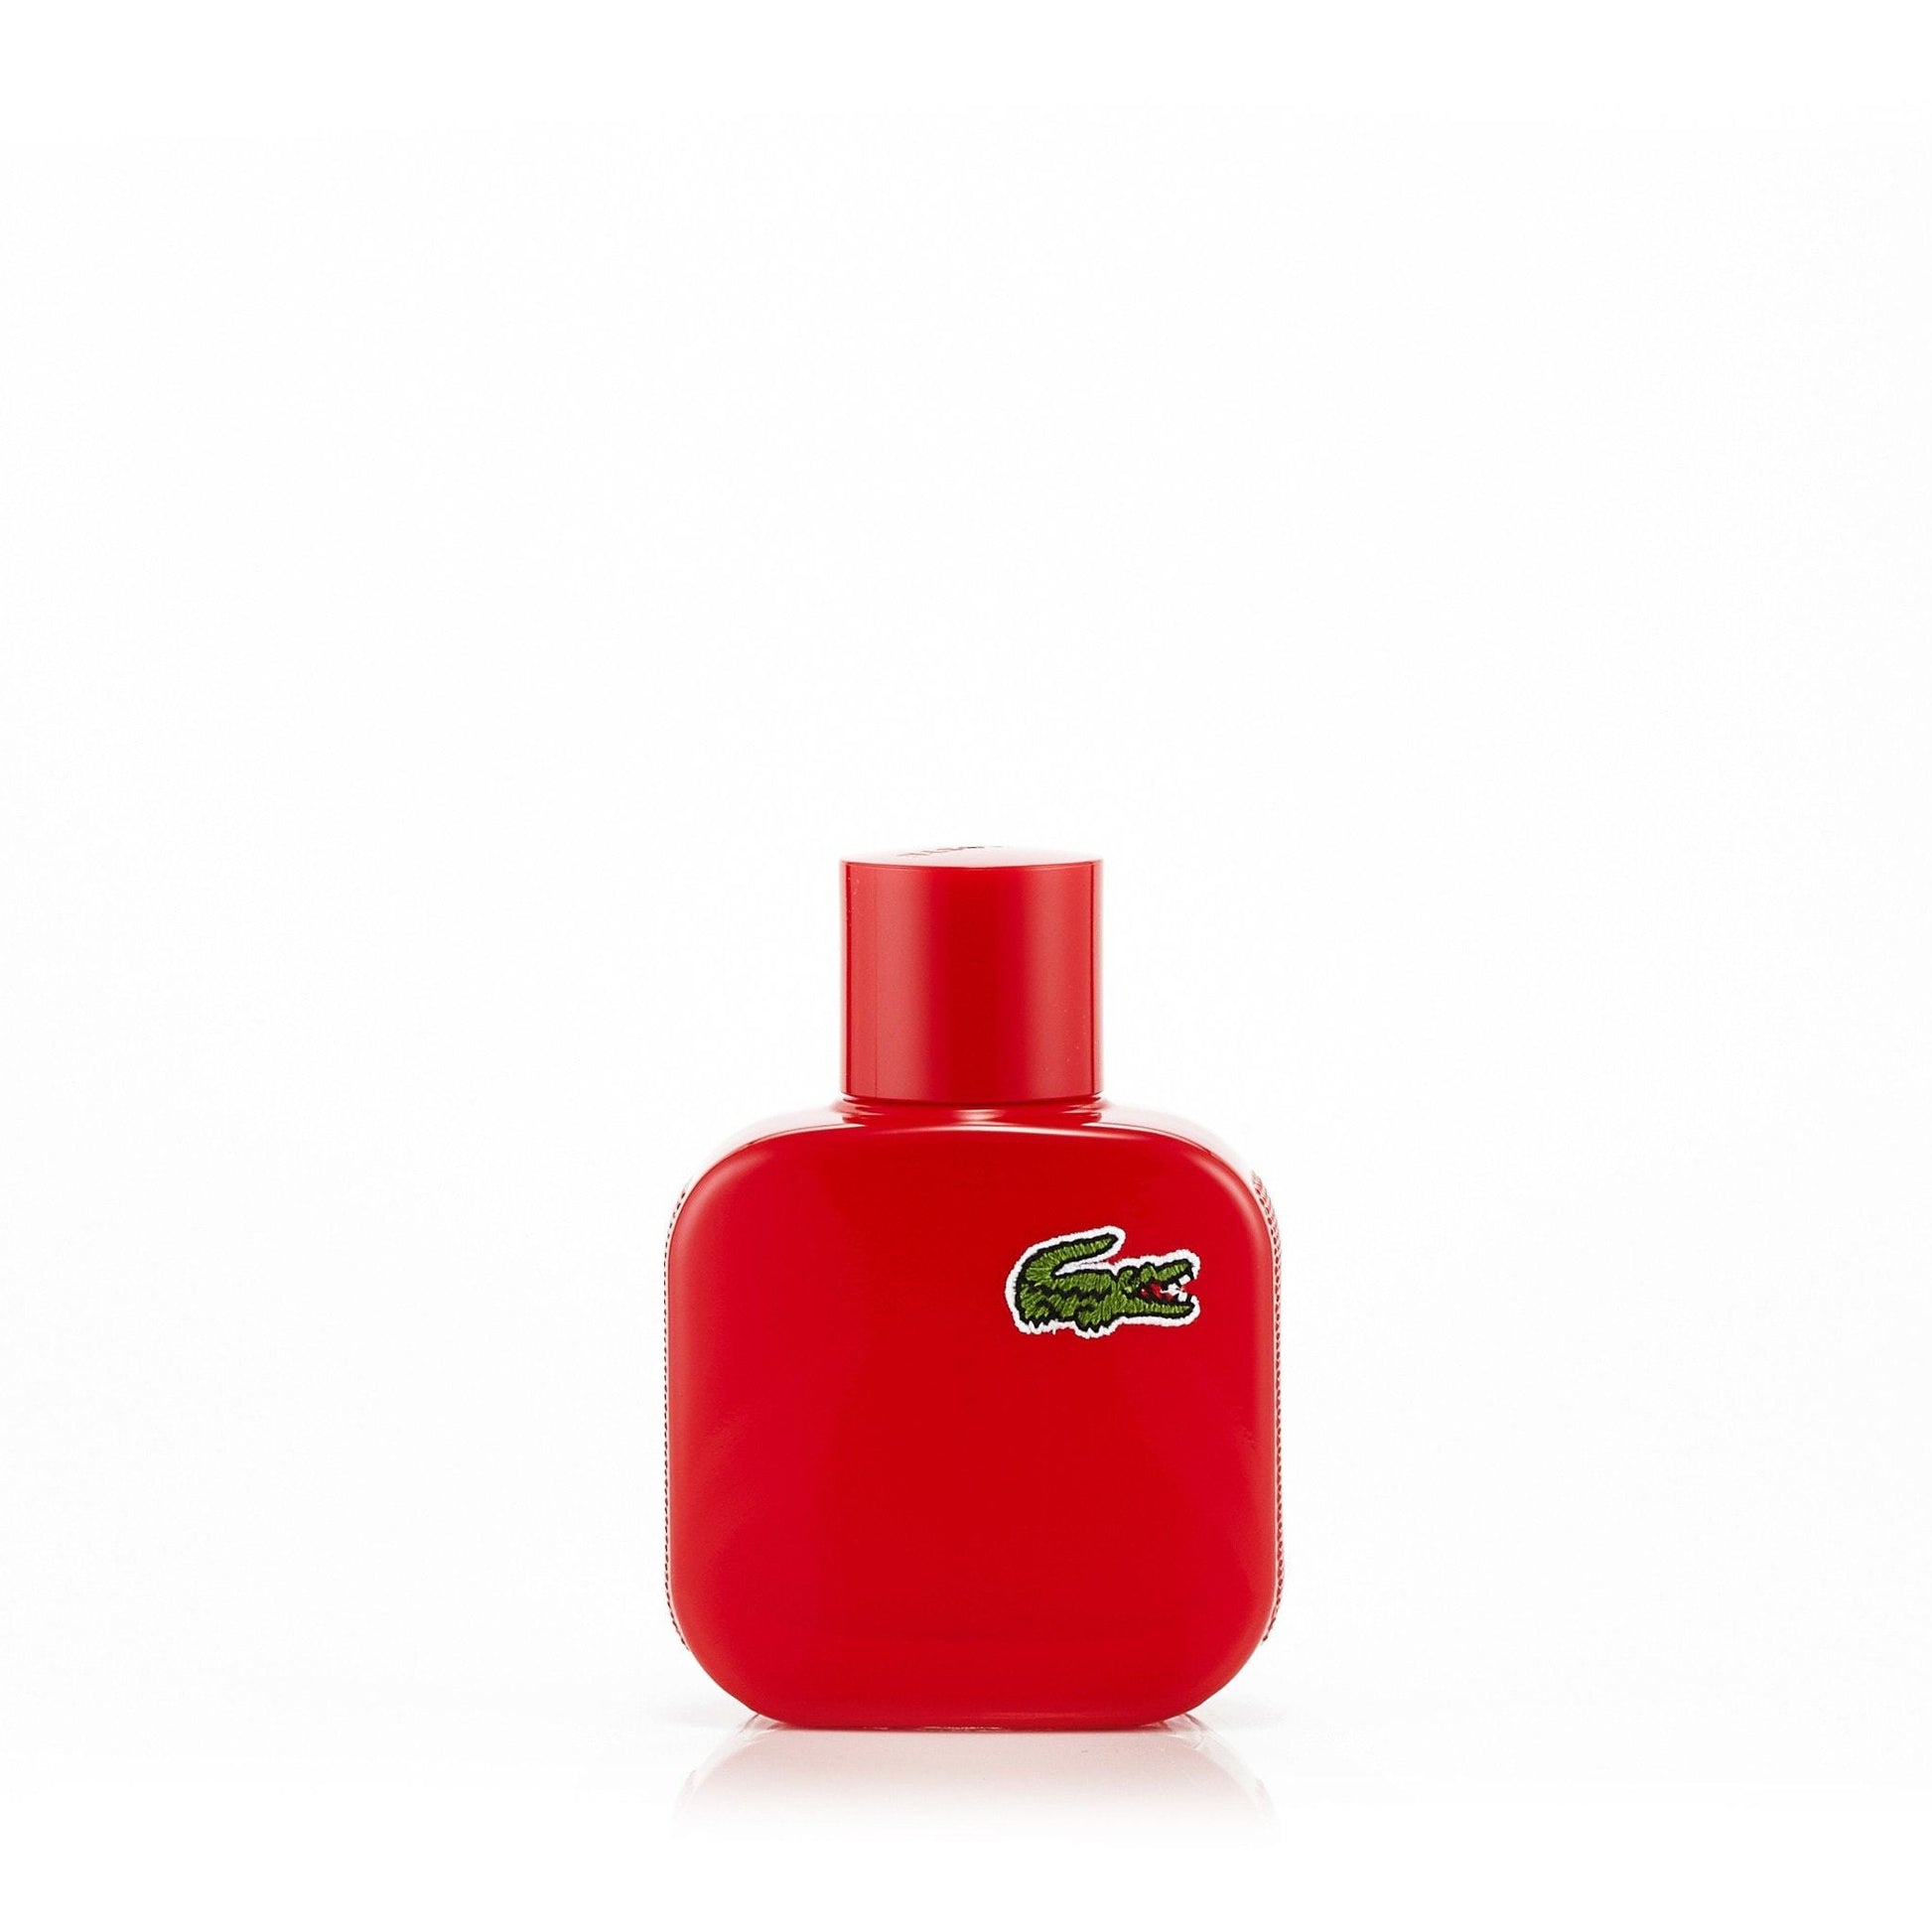 L.12.12 Rouge Eau de Toilette Spray for Men by Lacoste, Product image 4